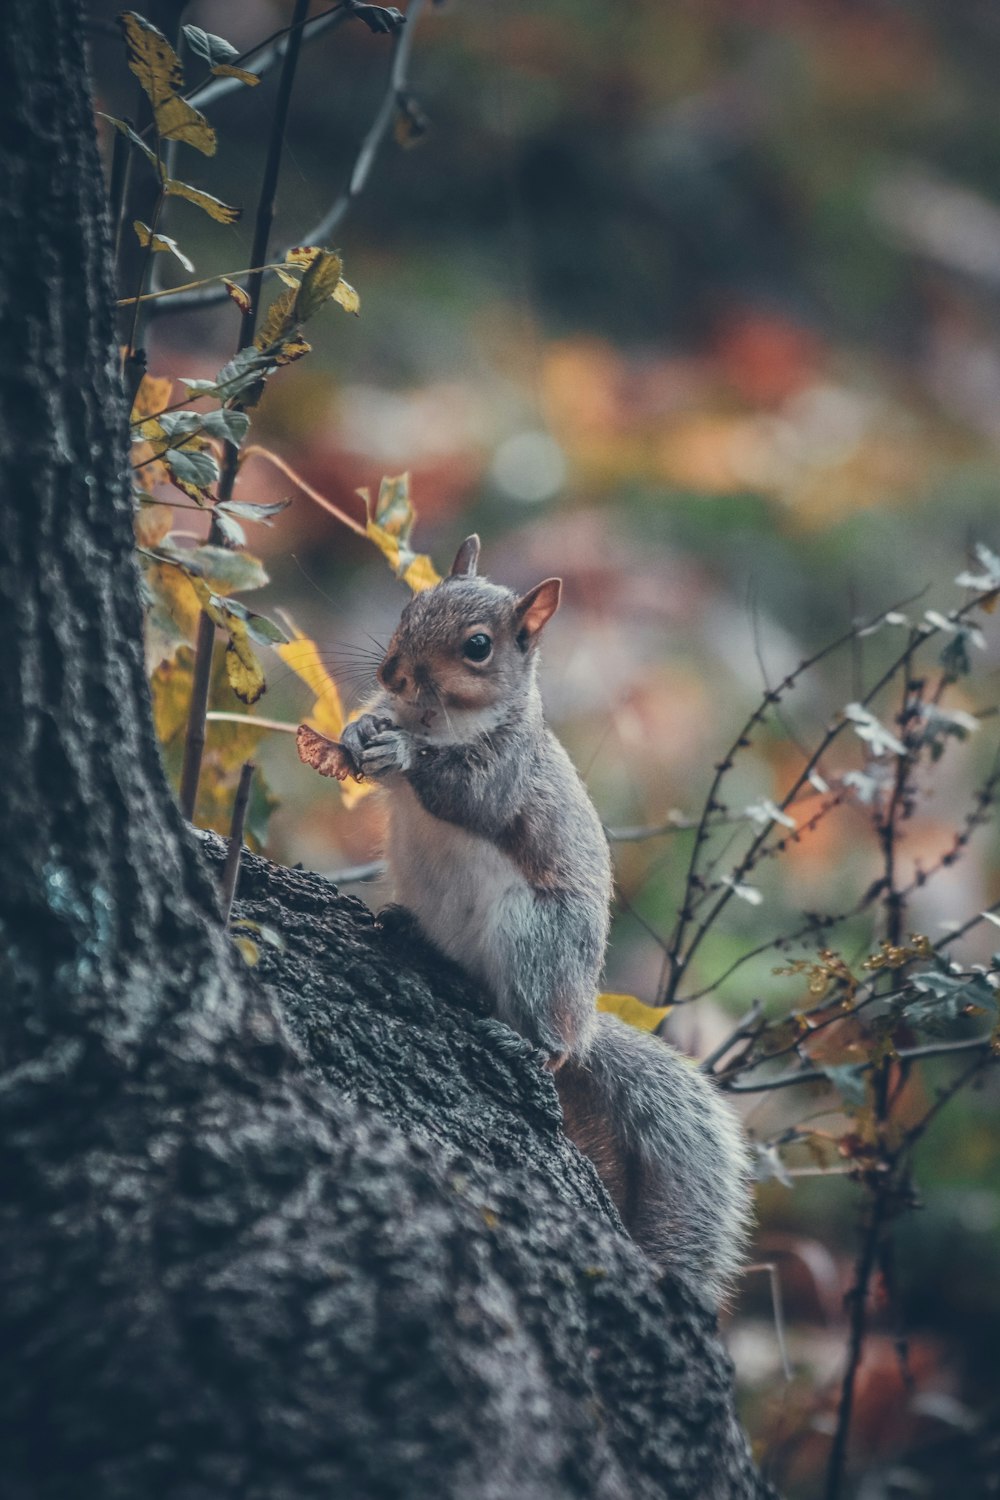 나뭇가지 위에 앉아 있는 다람쥐